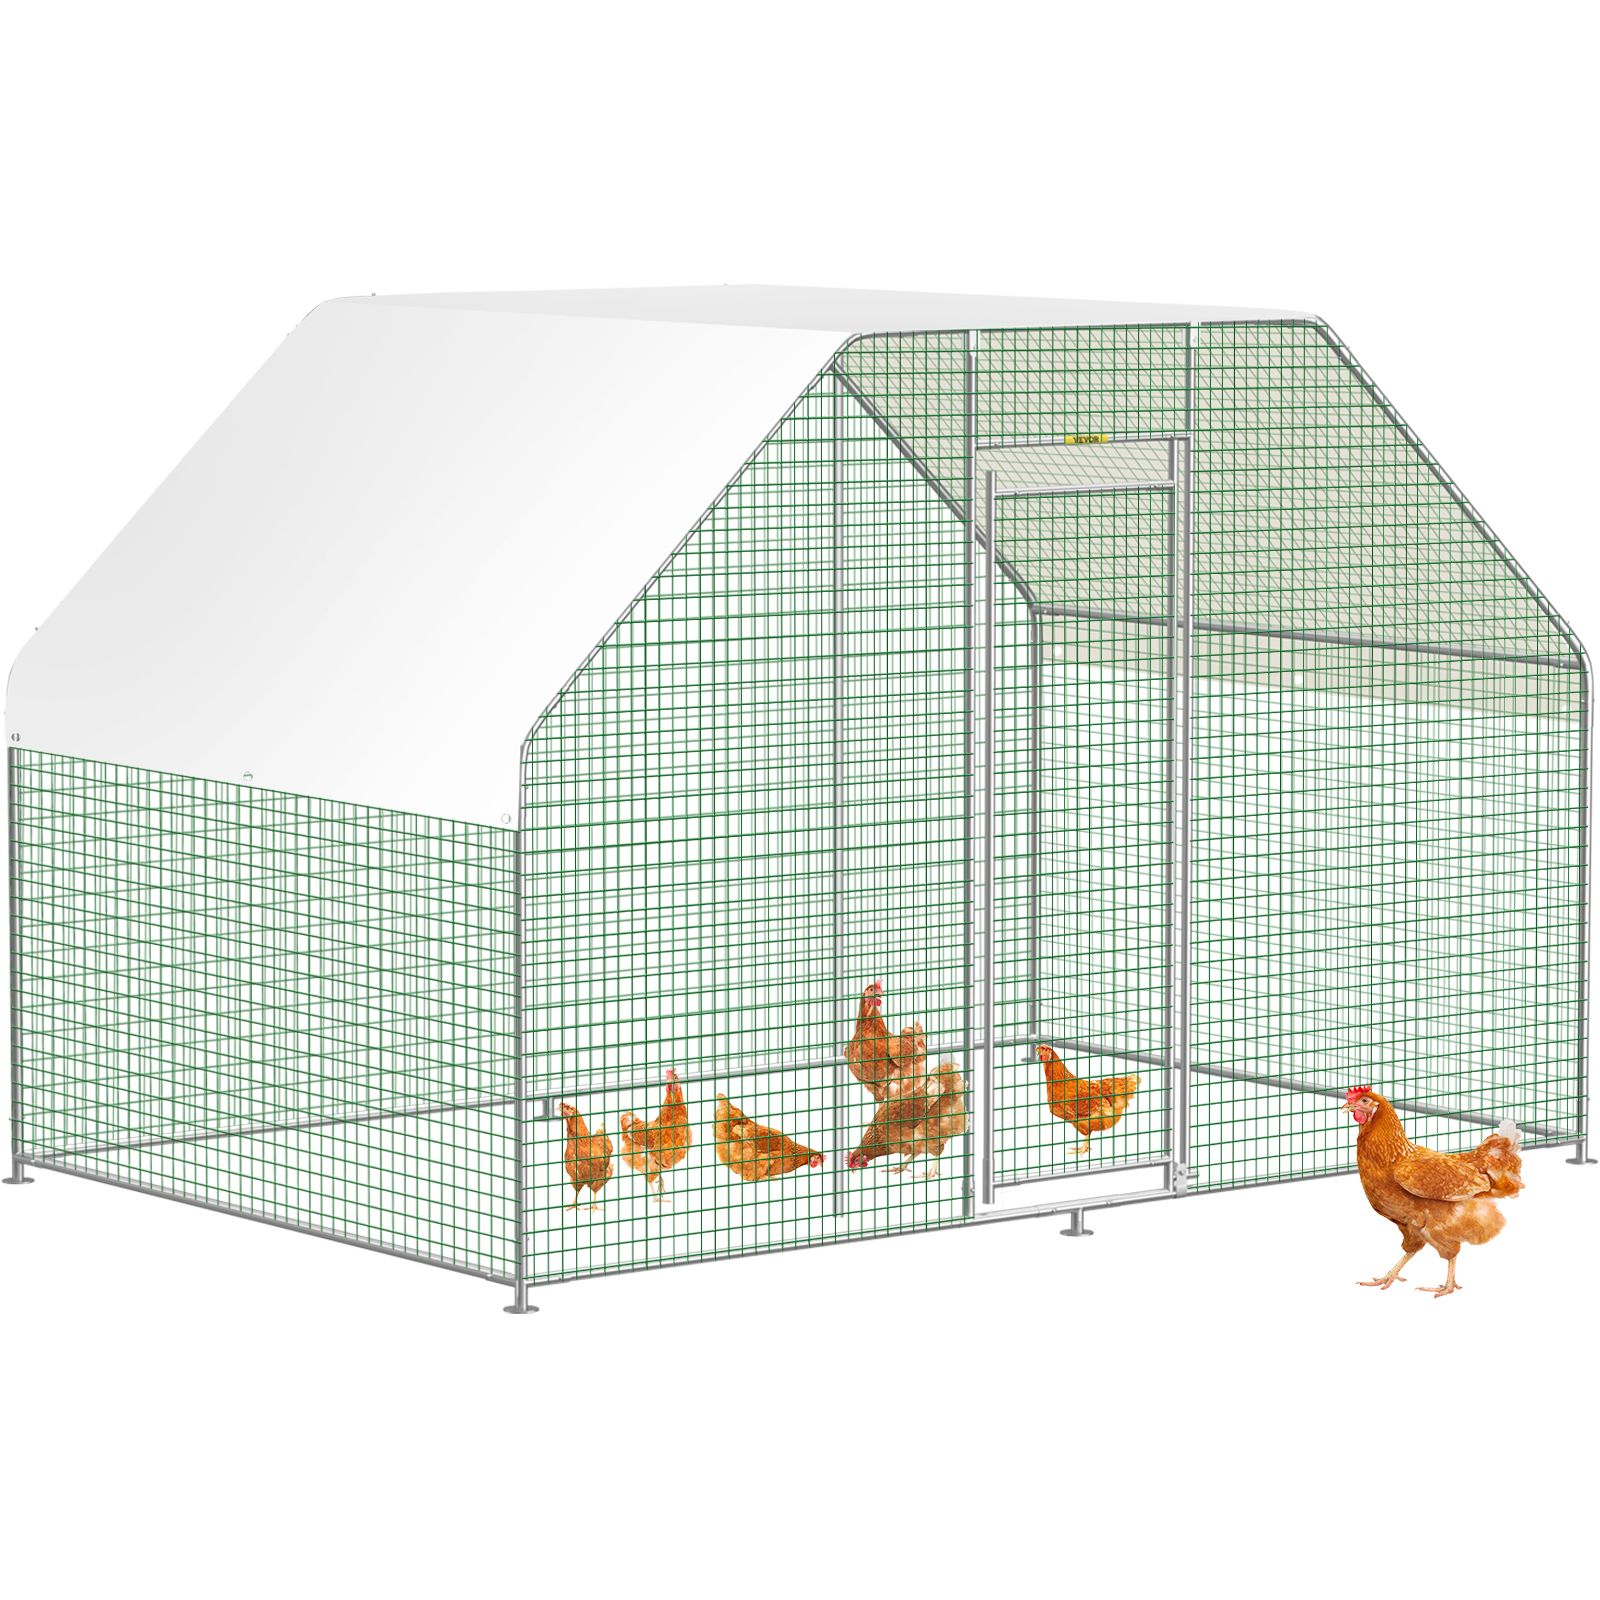 Chicken in a Hen House